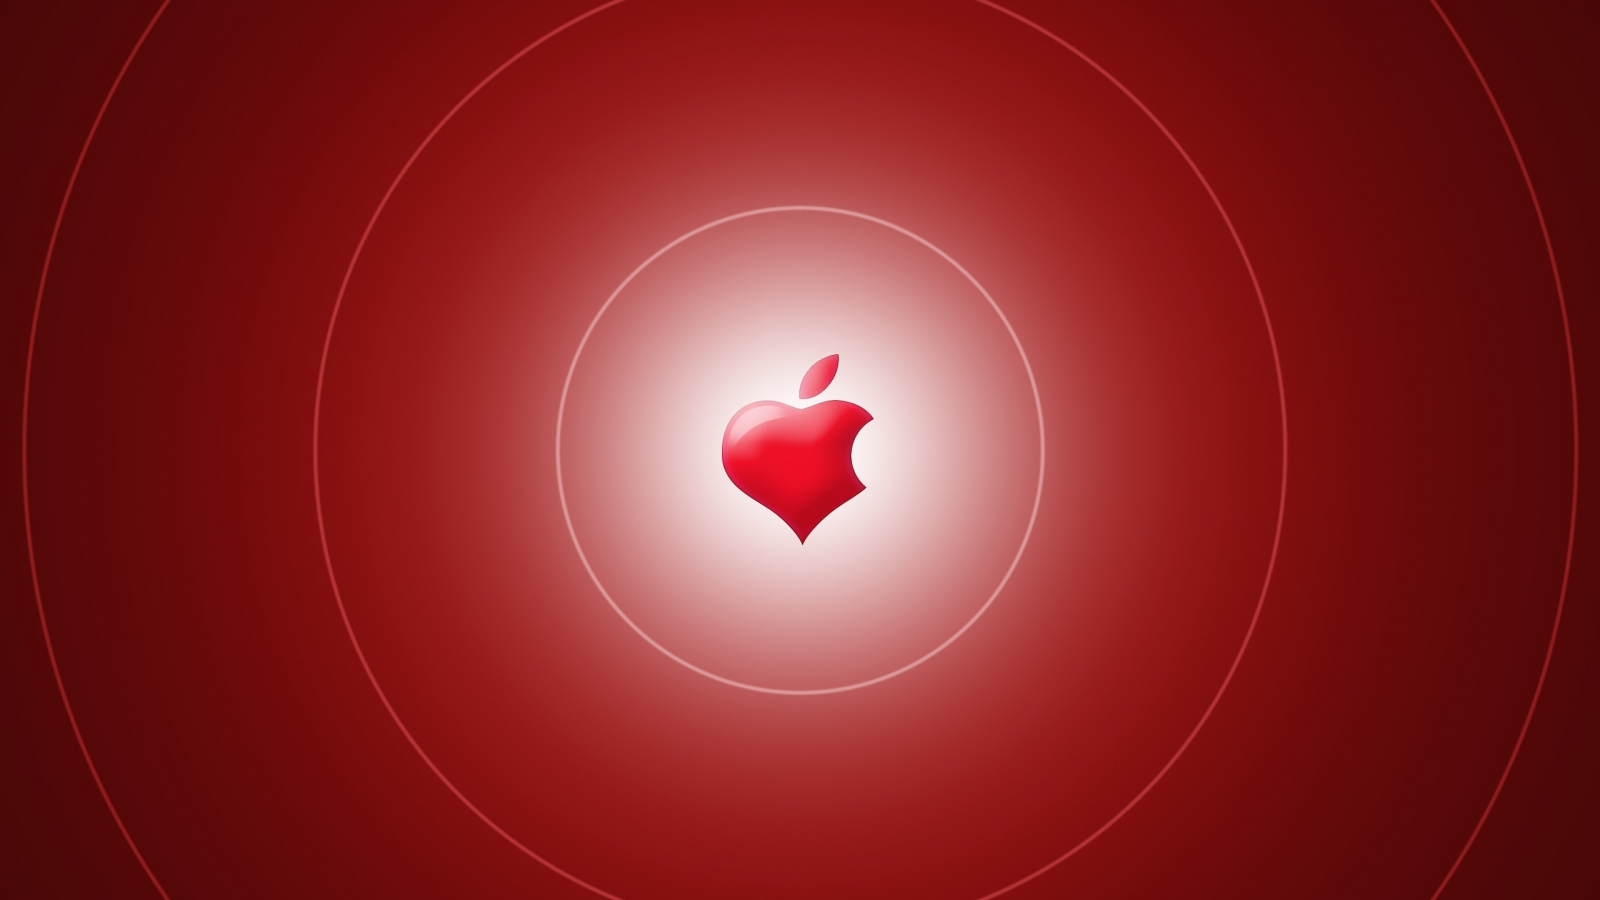 Apple Heart for 1600 x 900 HDTV resolution